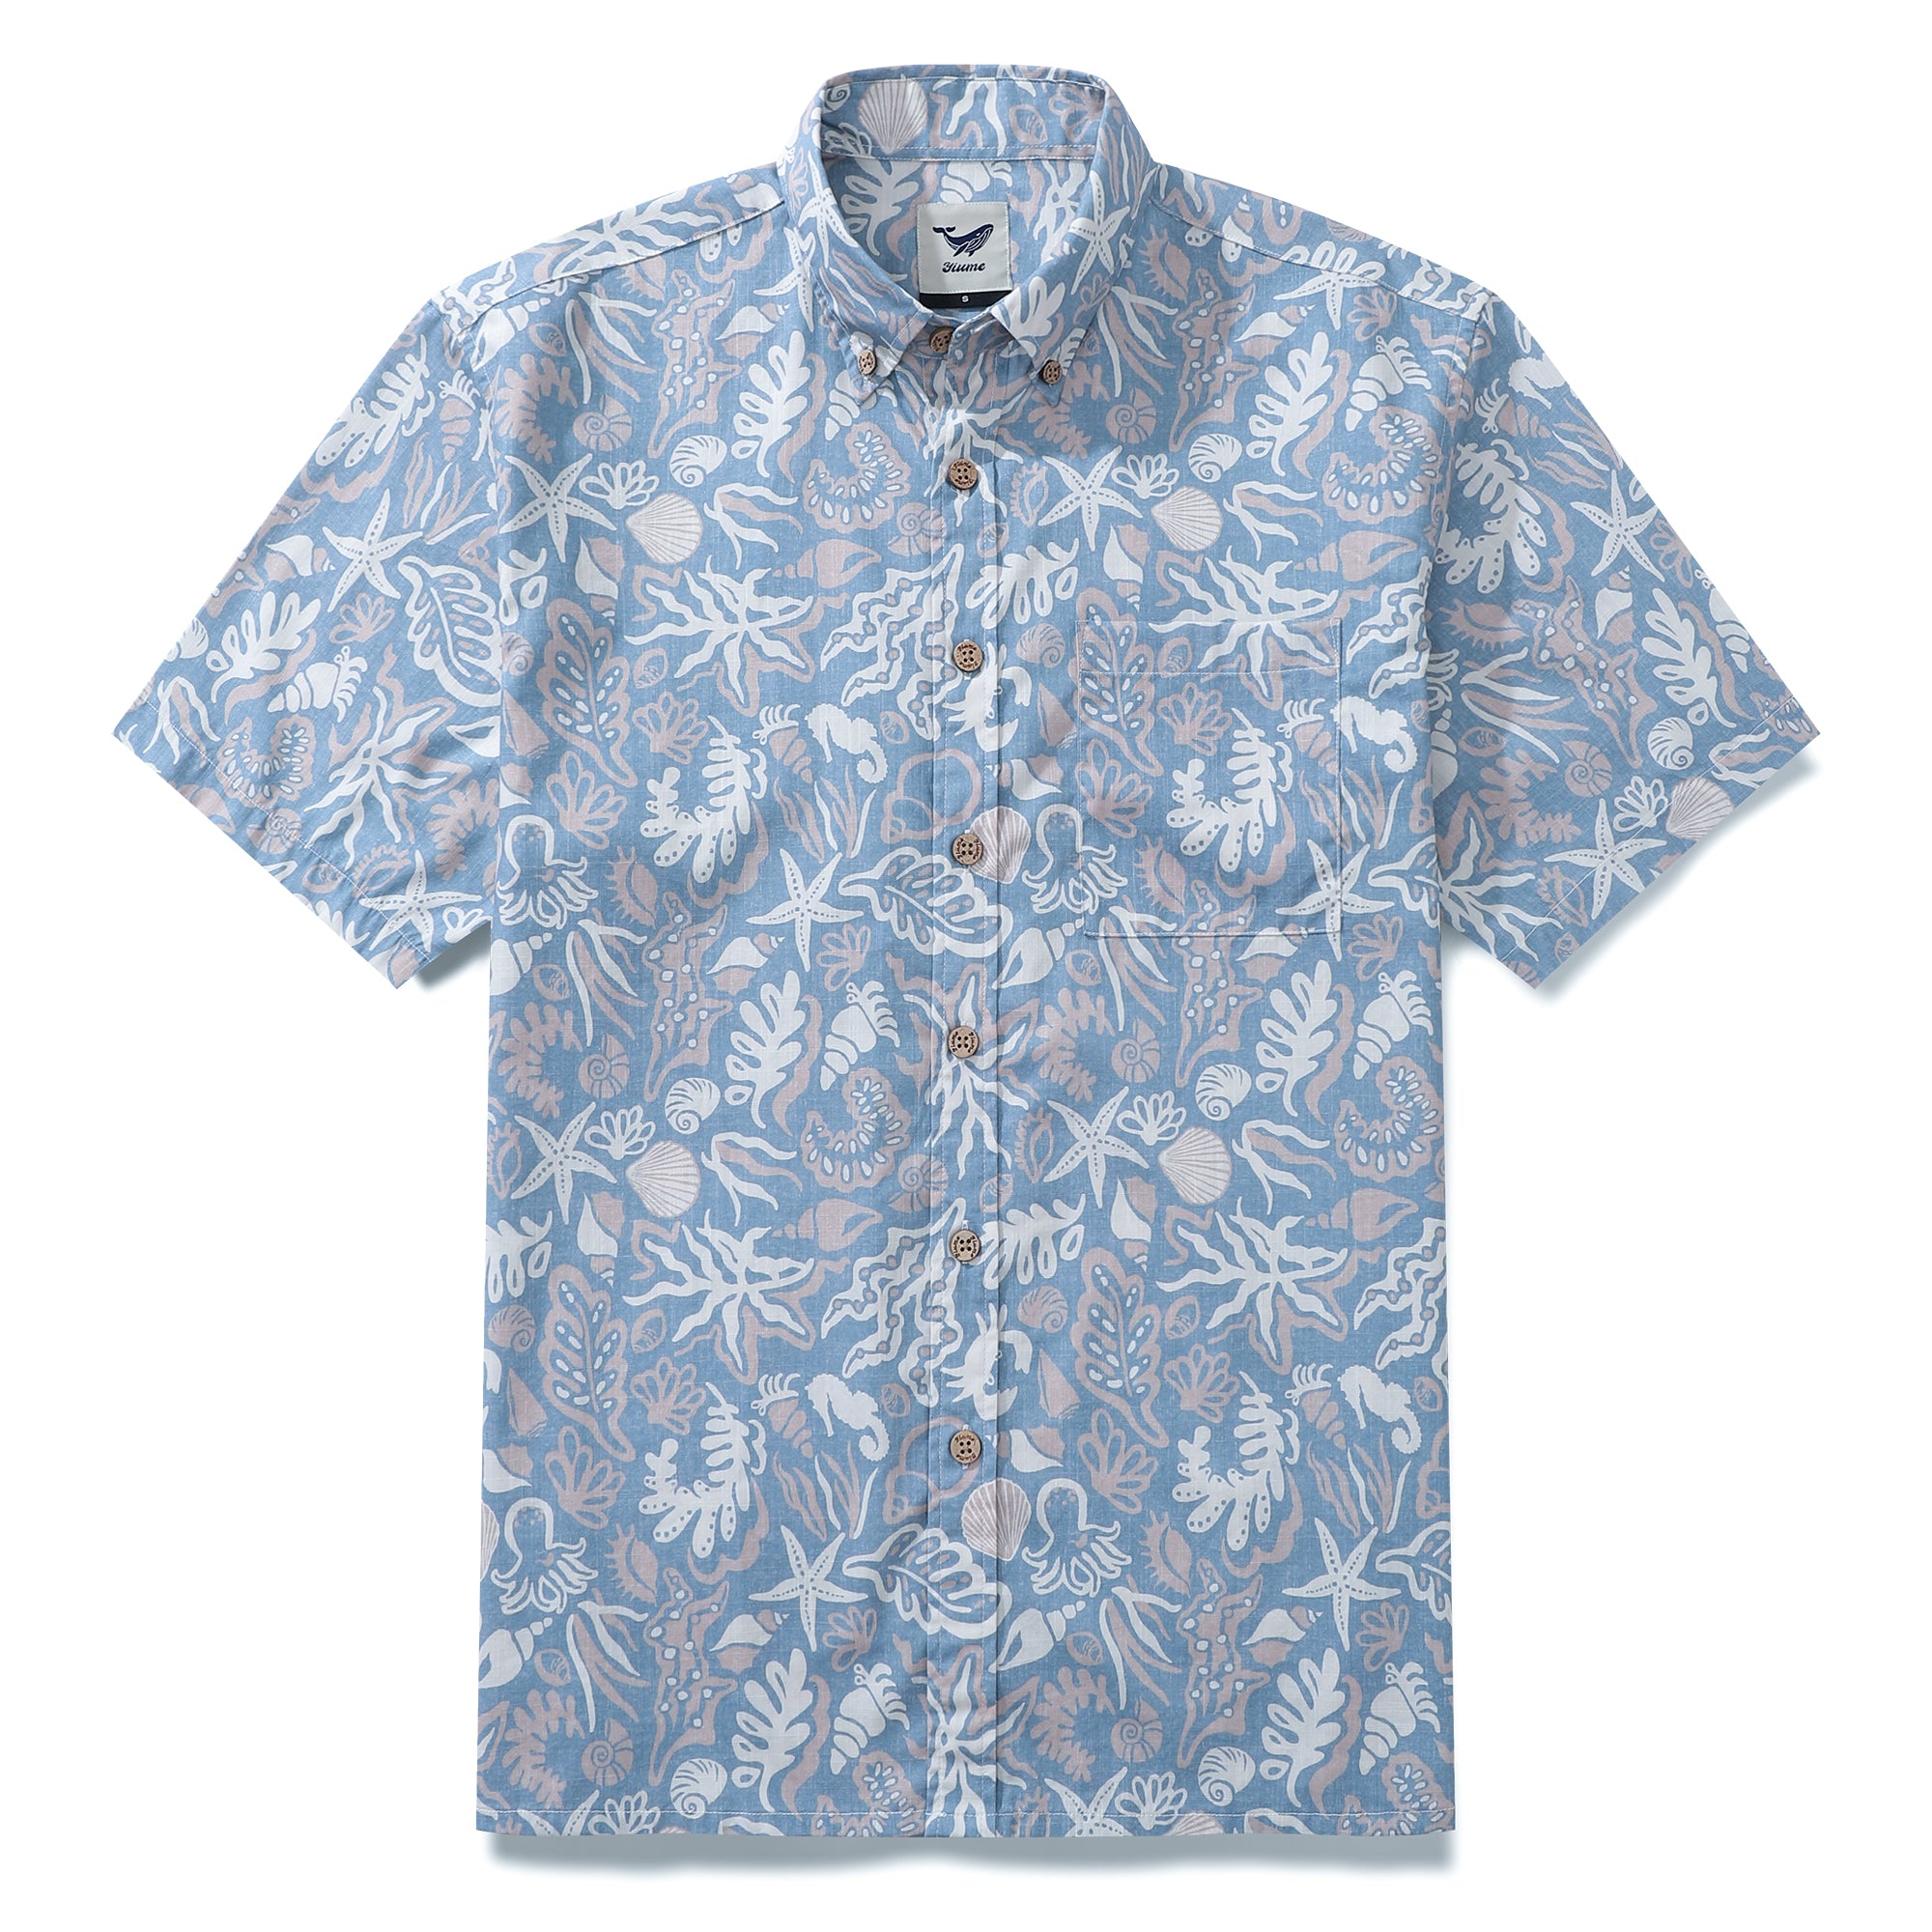 Chemises hawaïennes pour hommes imprimé silhouette océanique 100% coton à manches courtes - Bleu